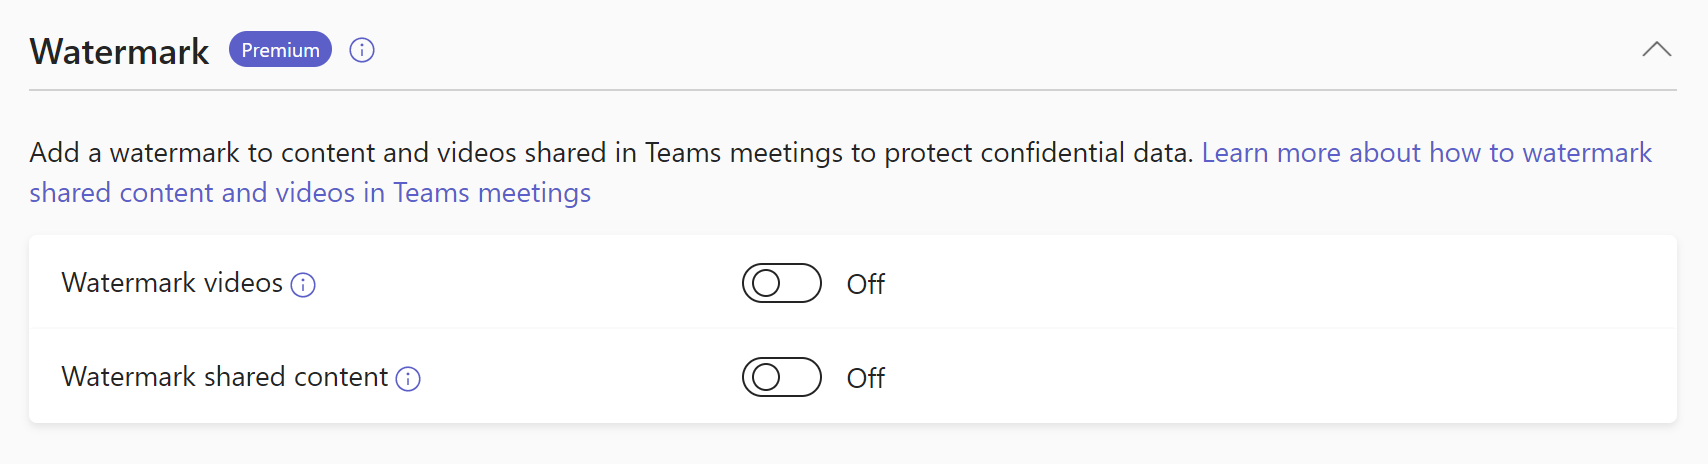 Screenshot of Teams meetings watermark policies.